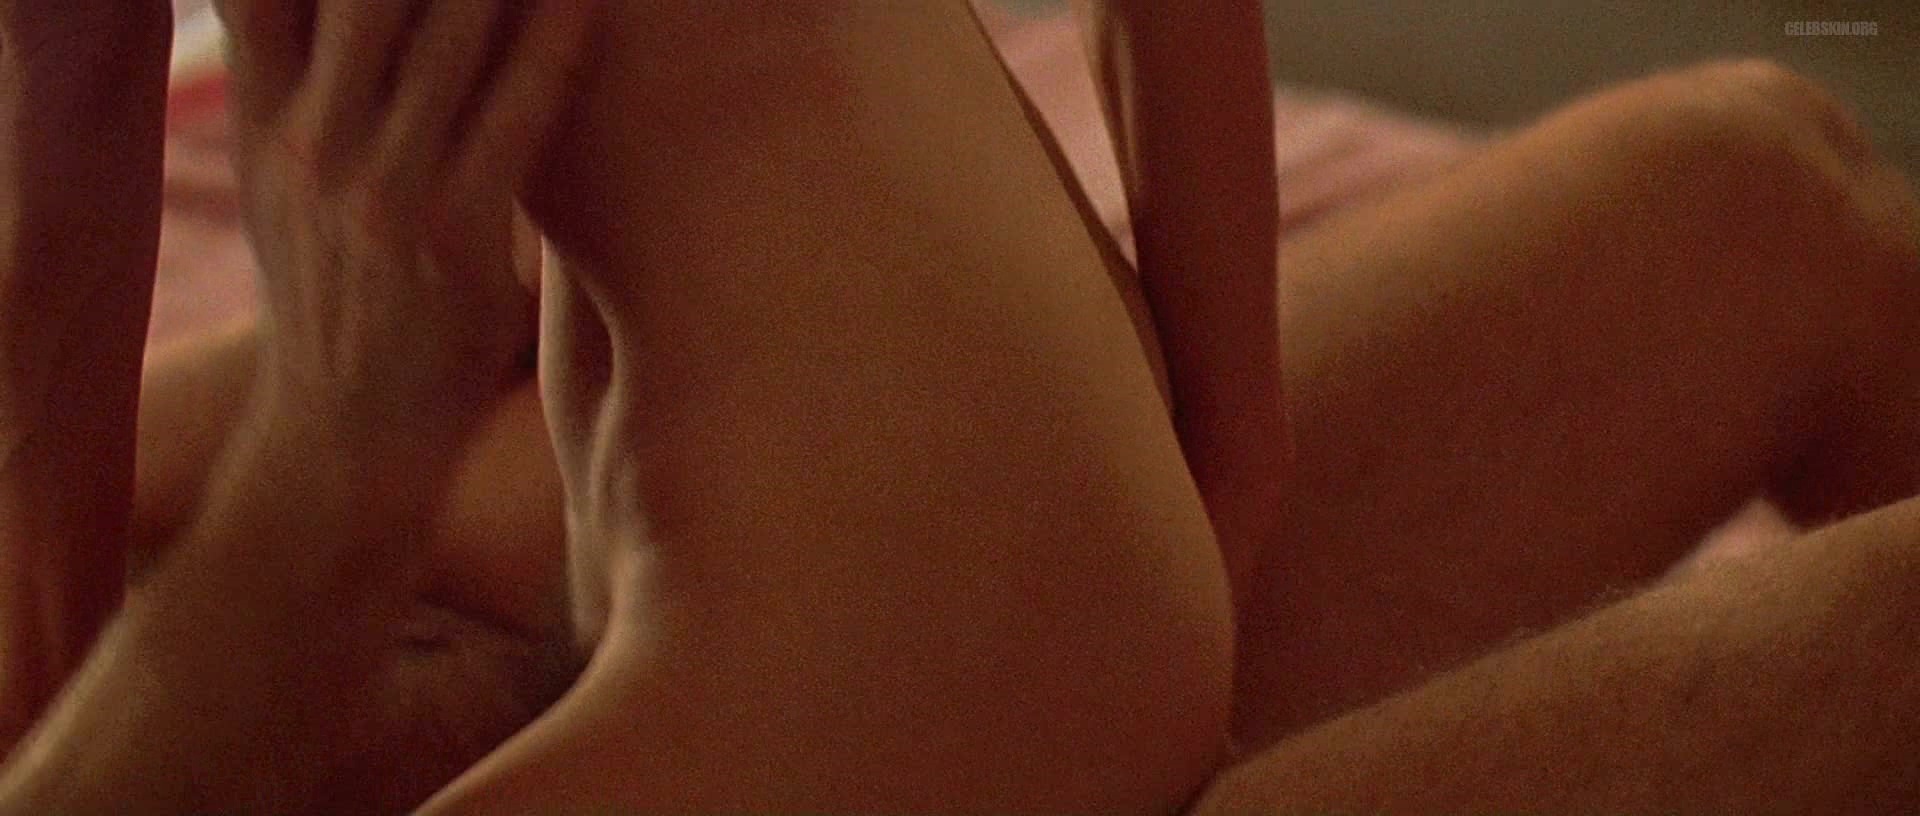 Kim Basinger Nuda ~30 Anni In Getaway 